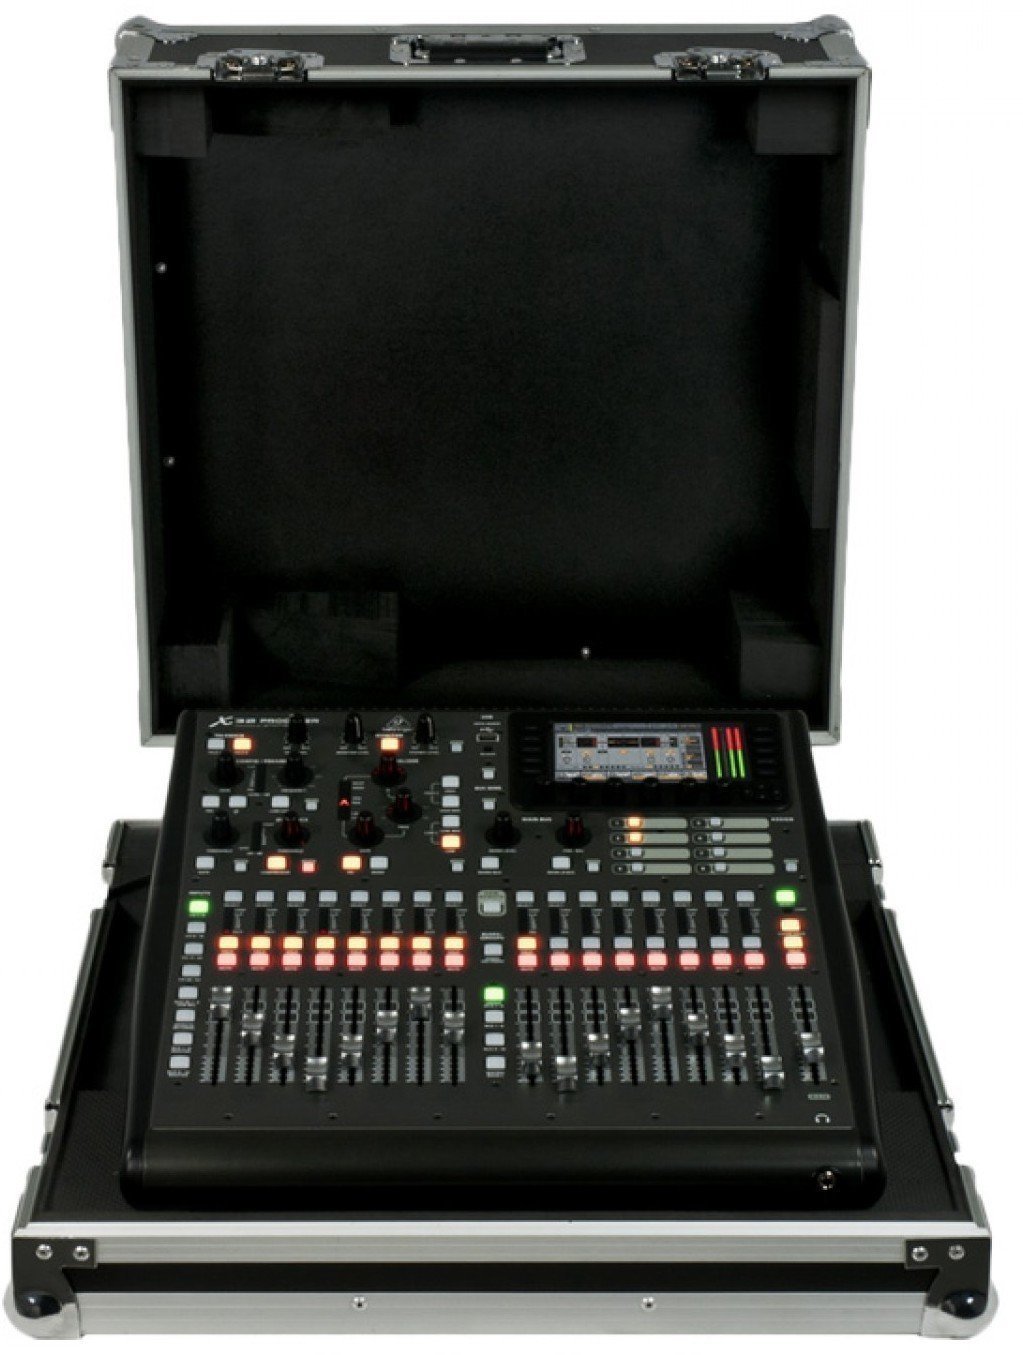 Table de mixage numérique Behringer X32 Producer TP Table de mixage numérique